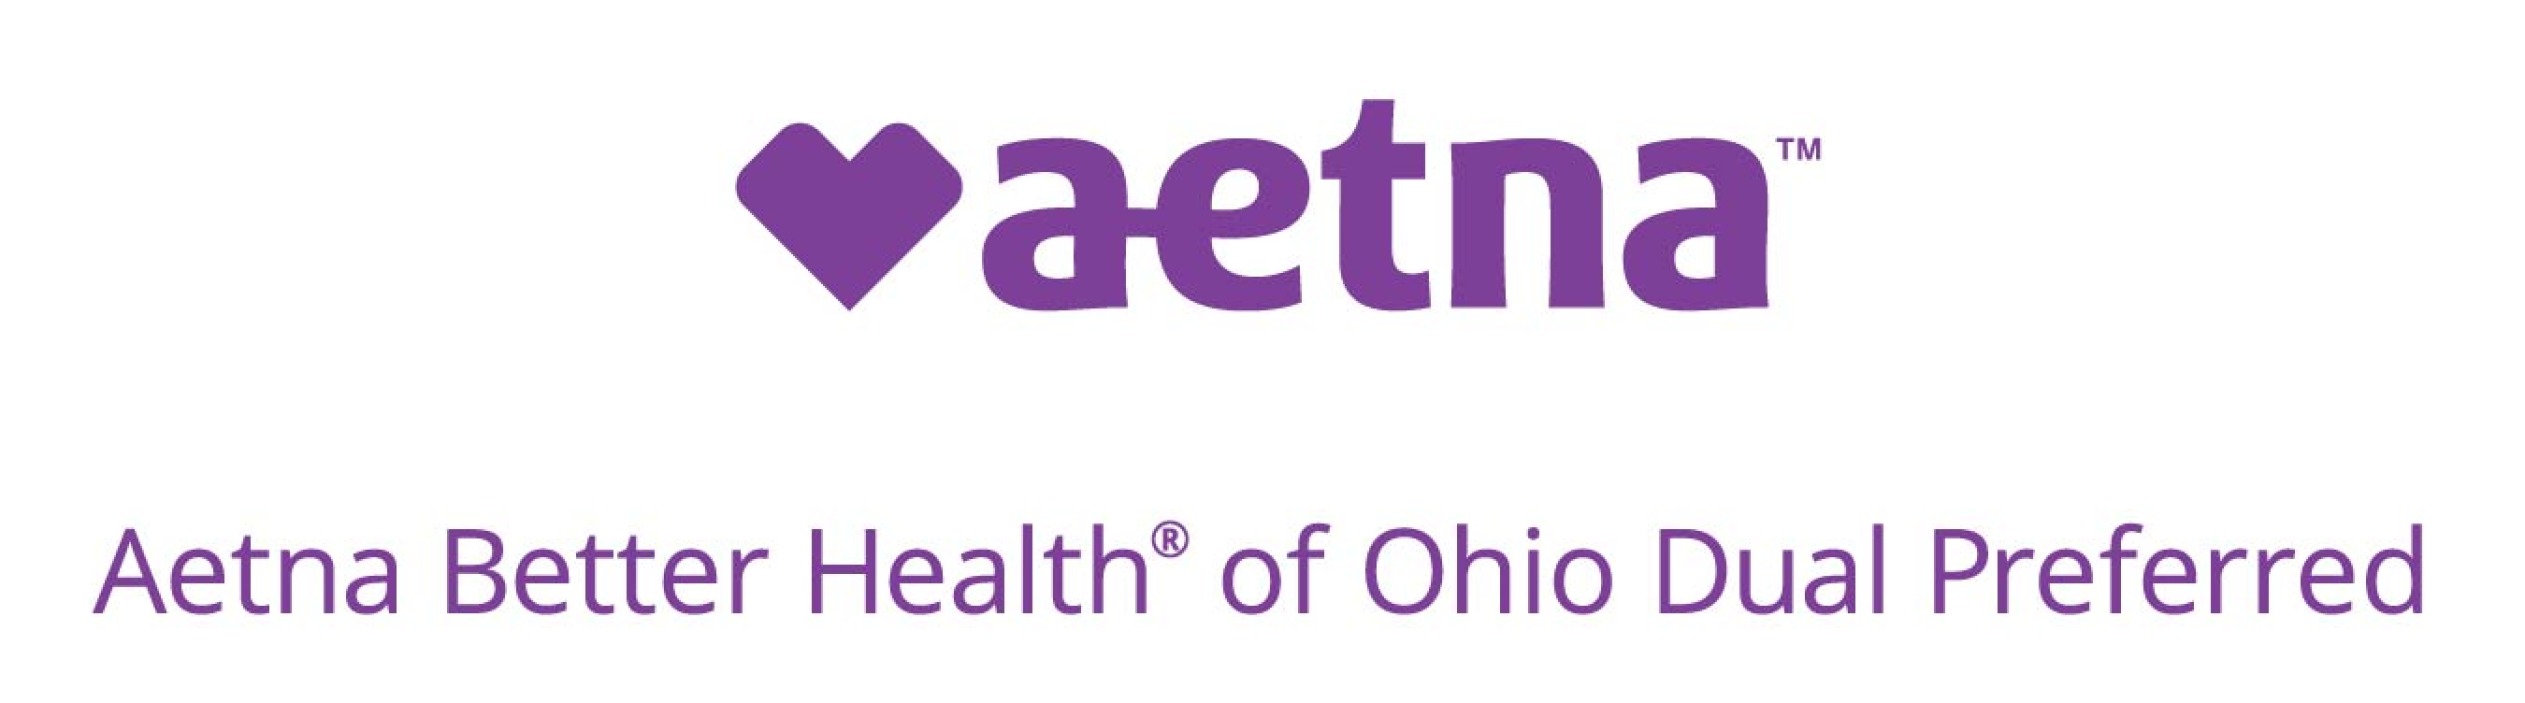 Aetna Better Health of Ohio logo